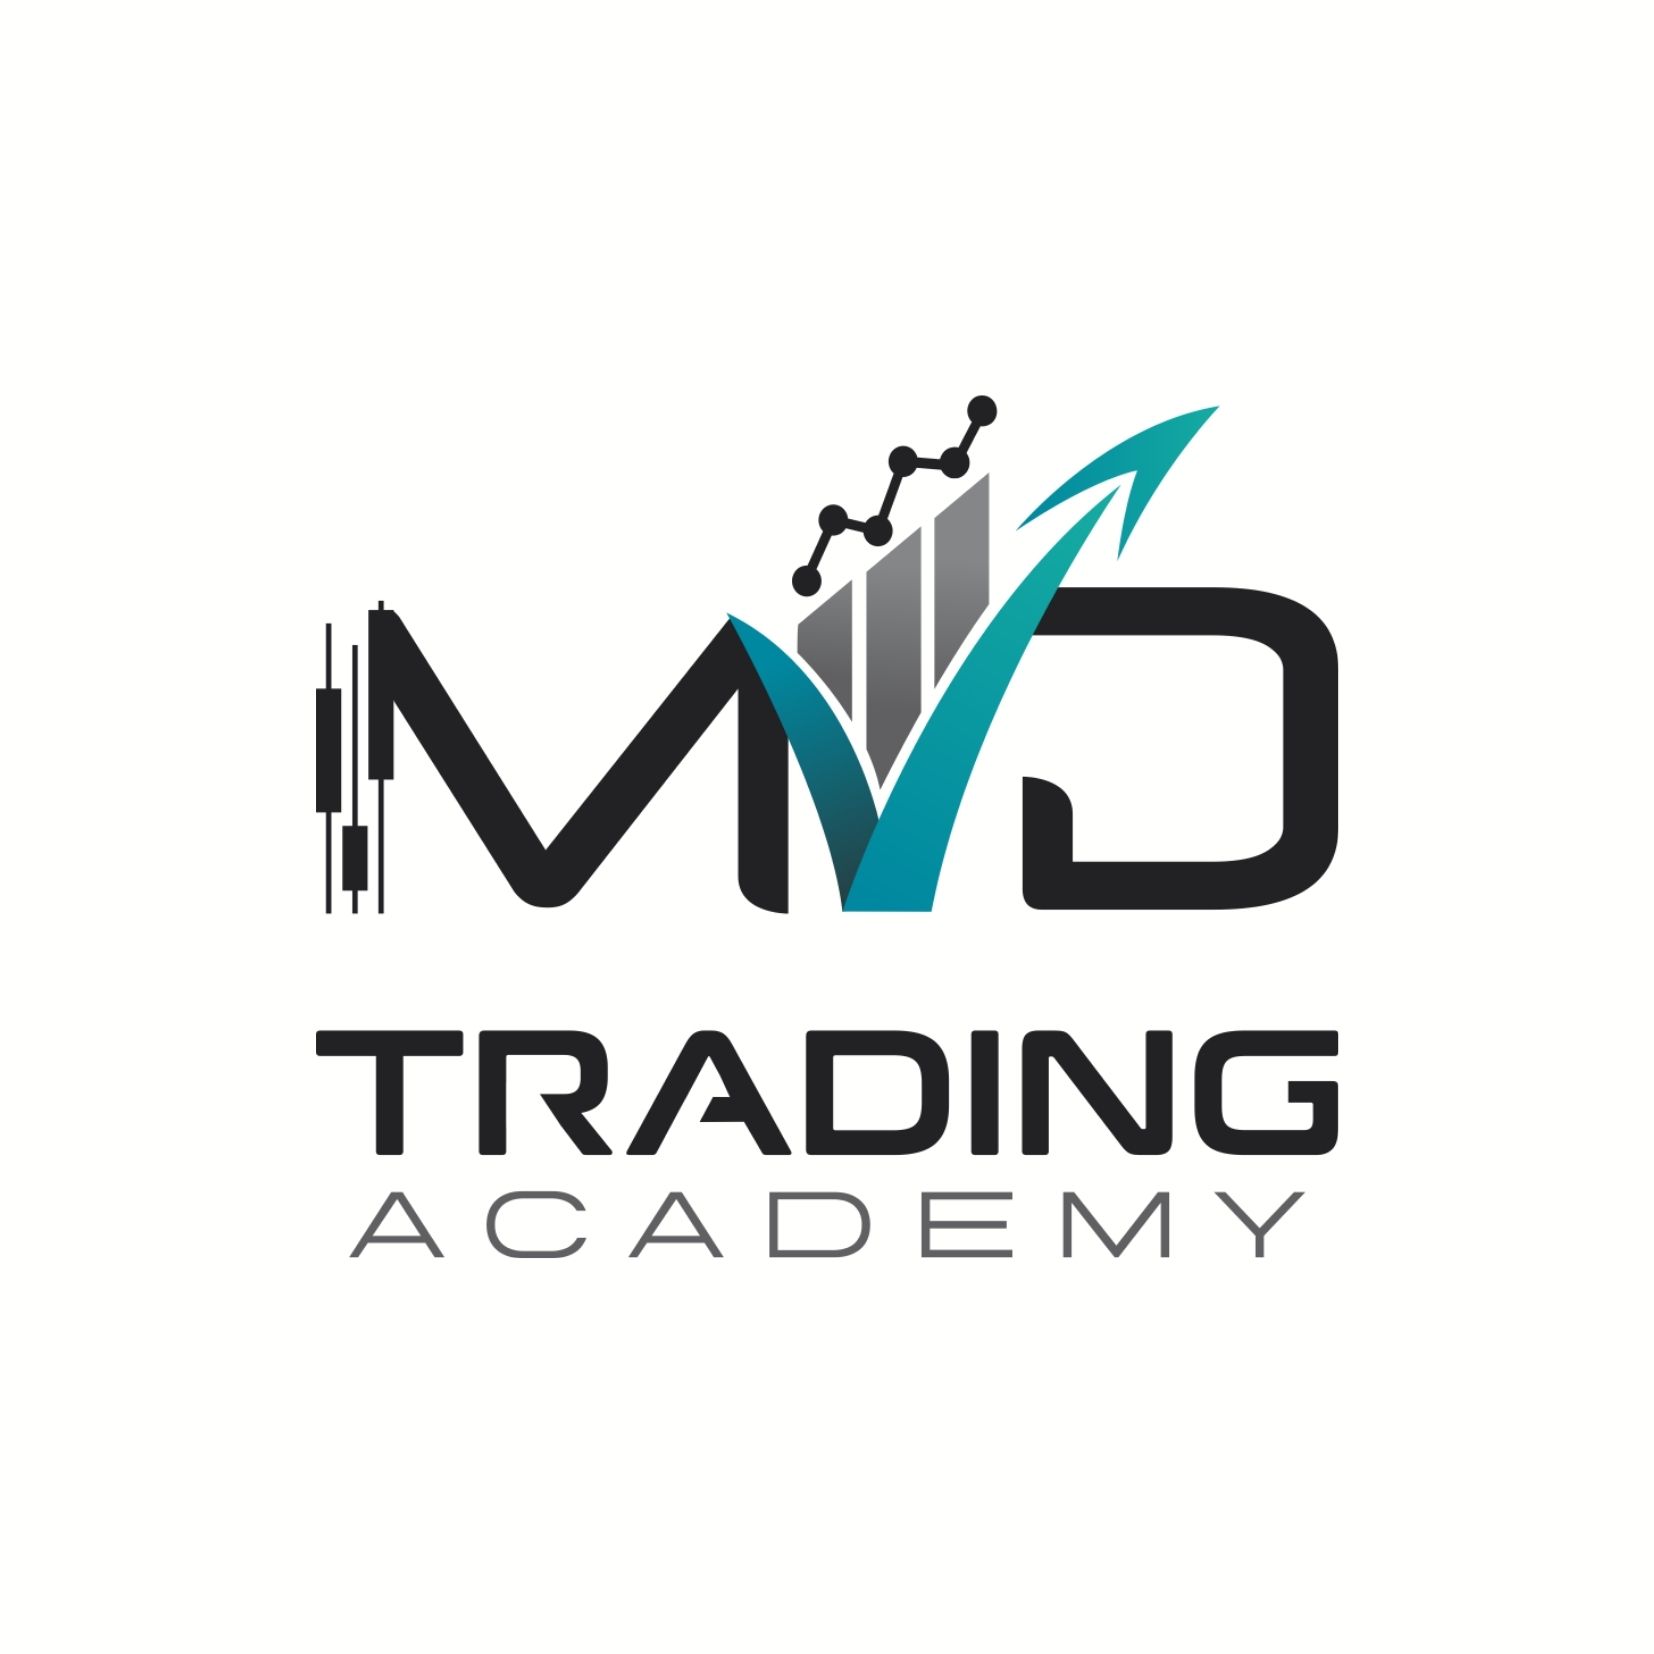 MVD Trading